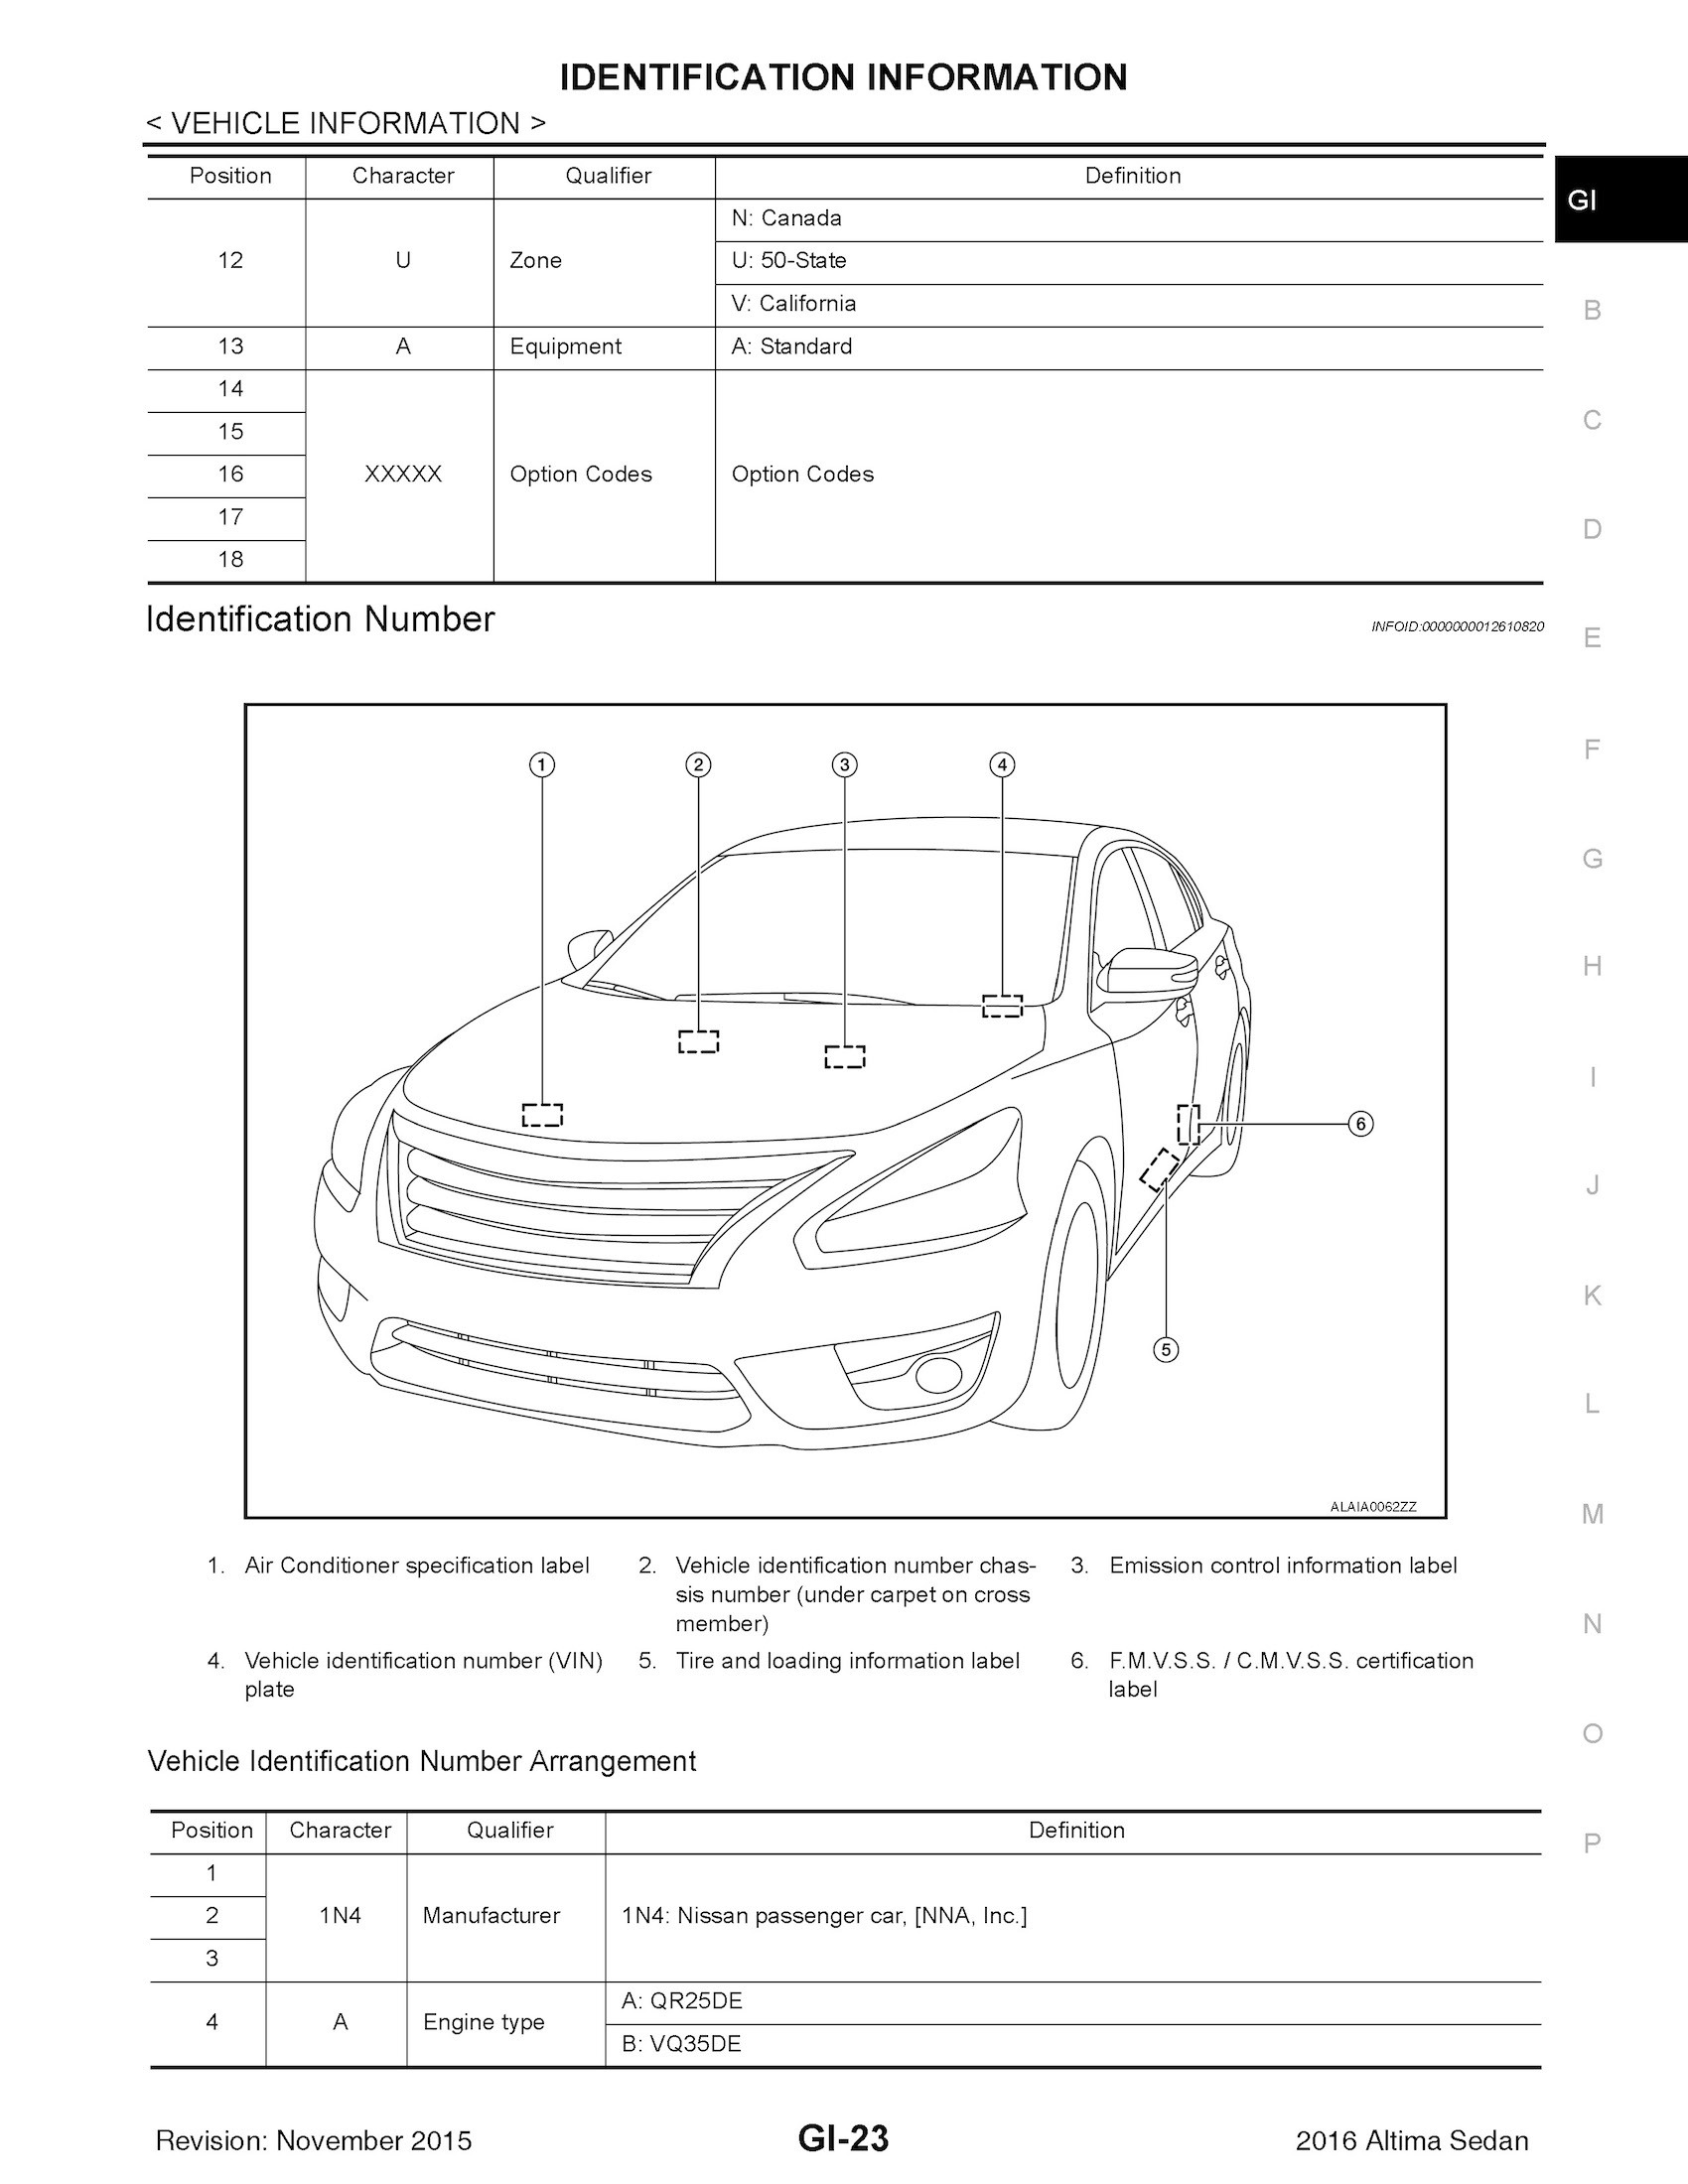 Download 2016 Nissan Altima Service Repair Manual.